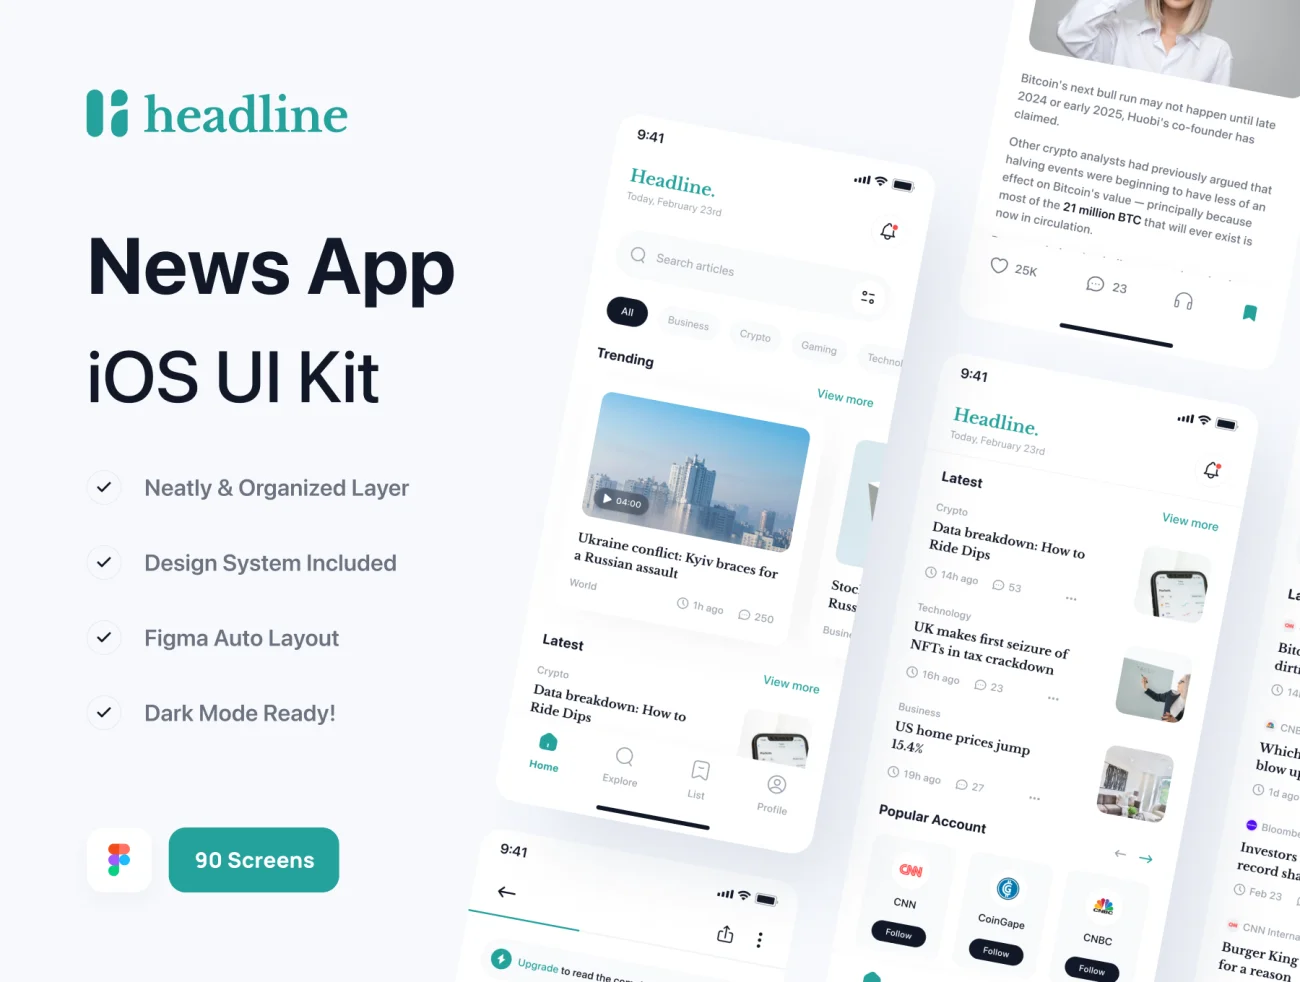 85屏新闻应用UI设计套件 Headline - News App UI Kit .figma-UI/UX、ui套件、主页、介绍、列表、博客、图表、应用、表单、详情-到位啦UI